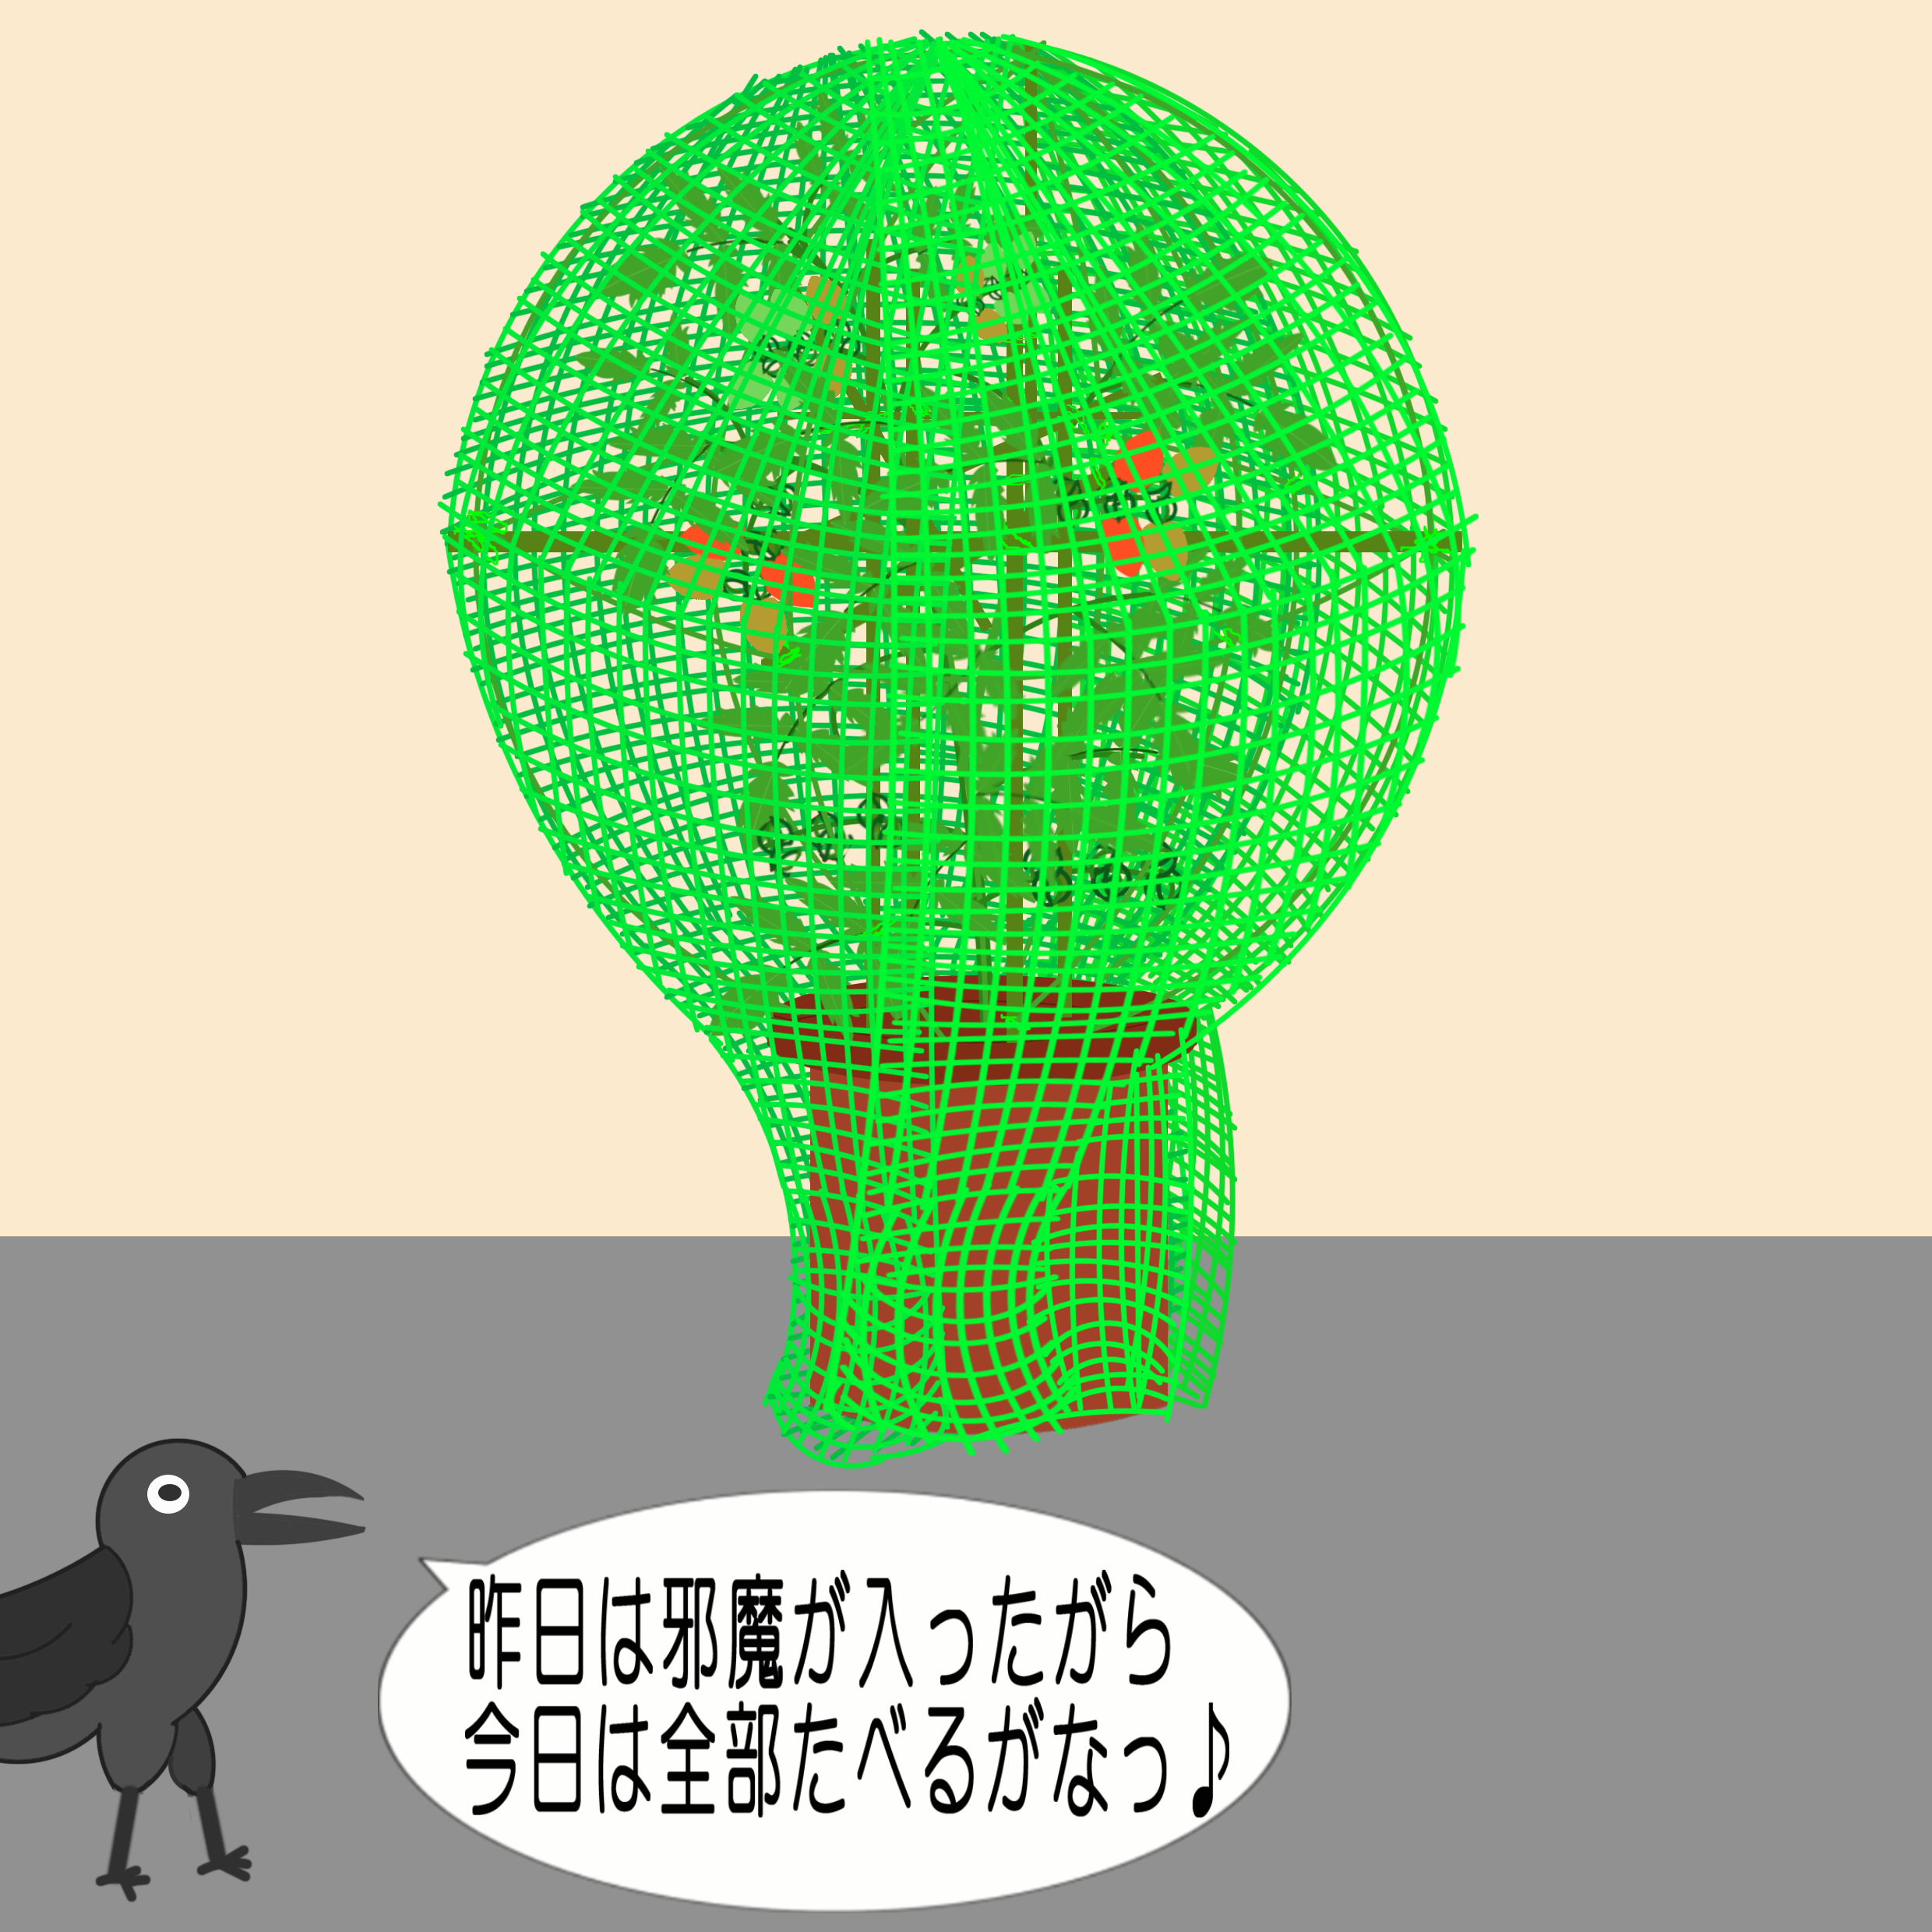 「なまねご」の方言GIFアニメ-逆鳥かご作戦